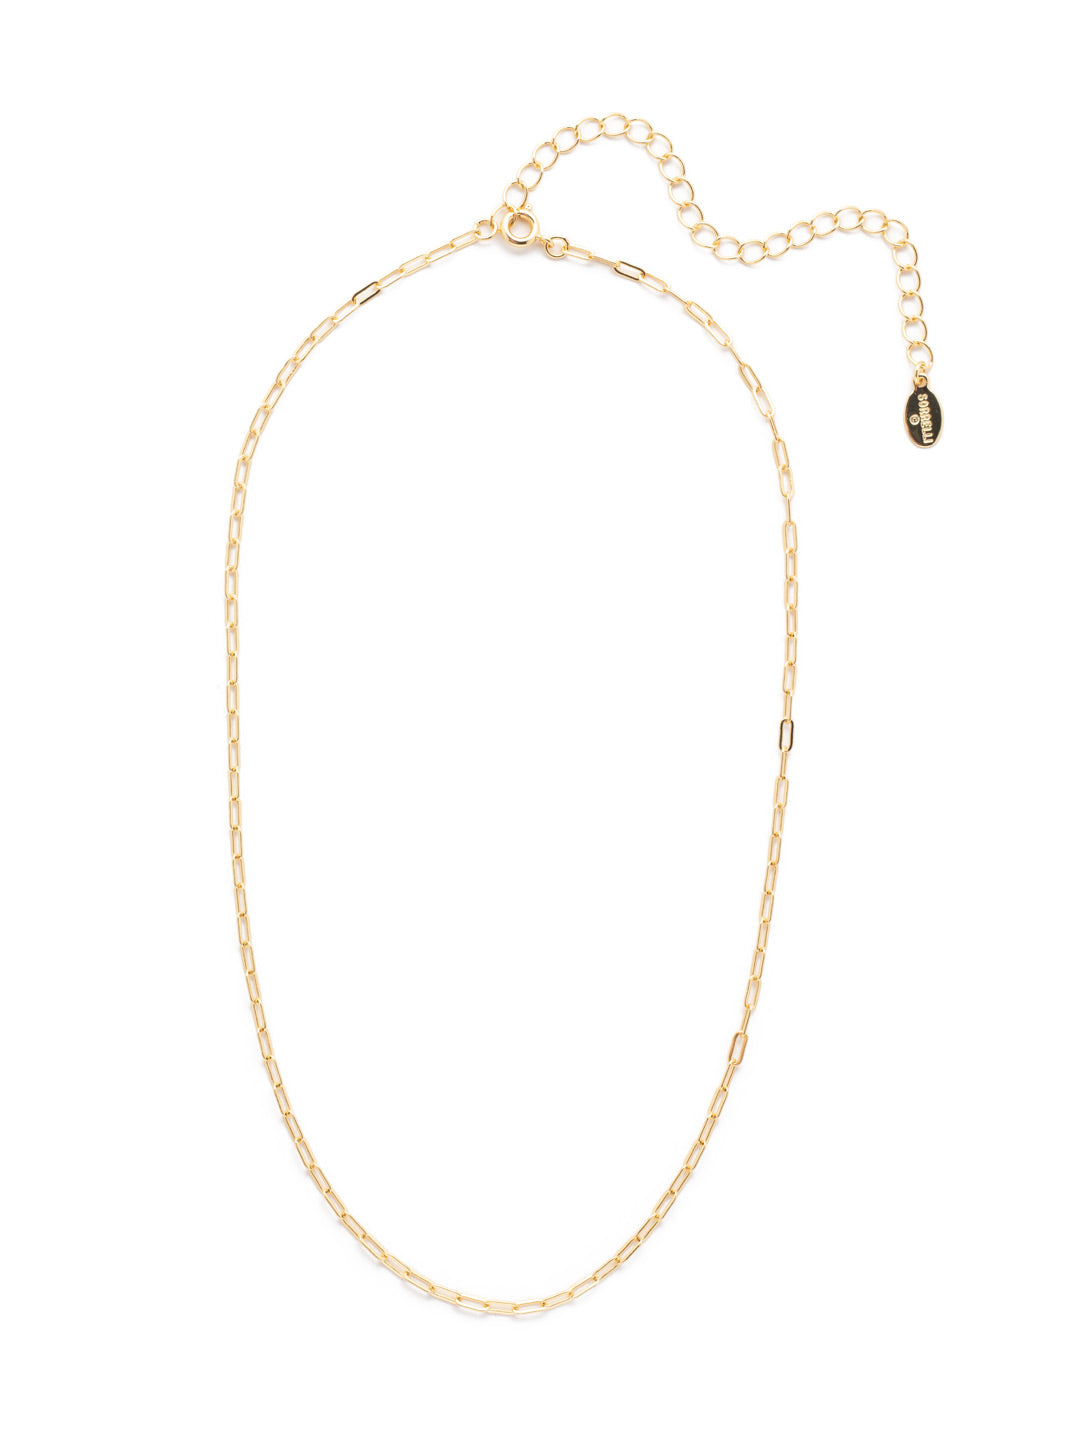 Minnie Chain Tennis Necklace - NEV109BGCRY